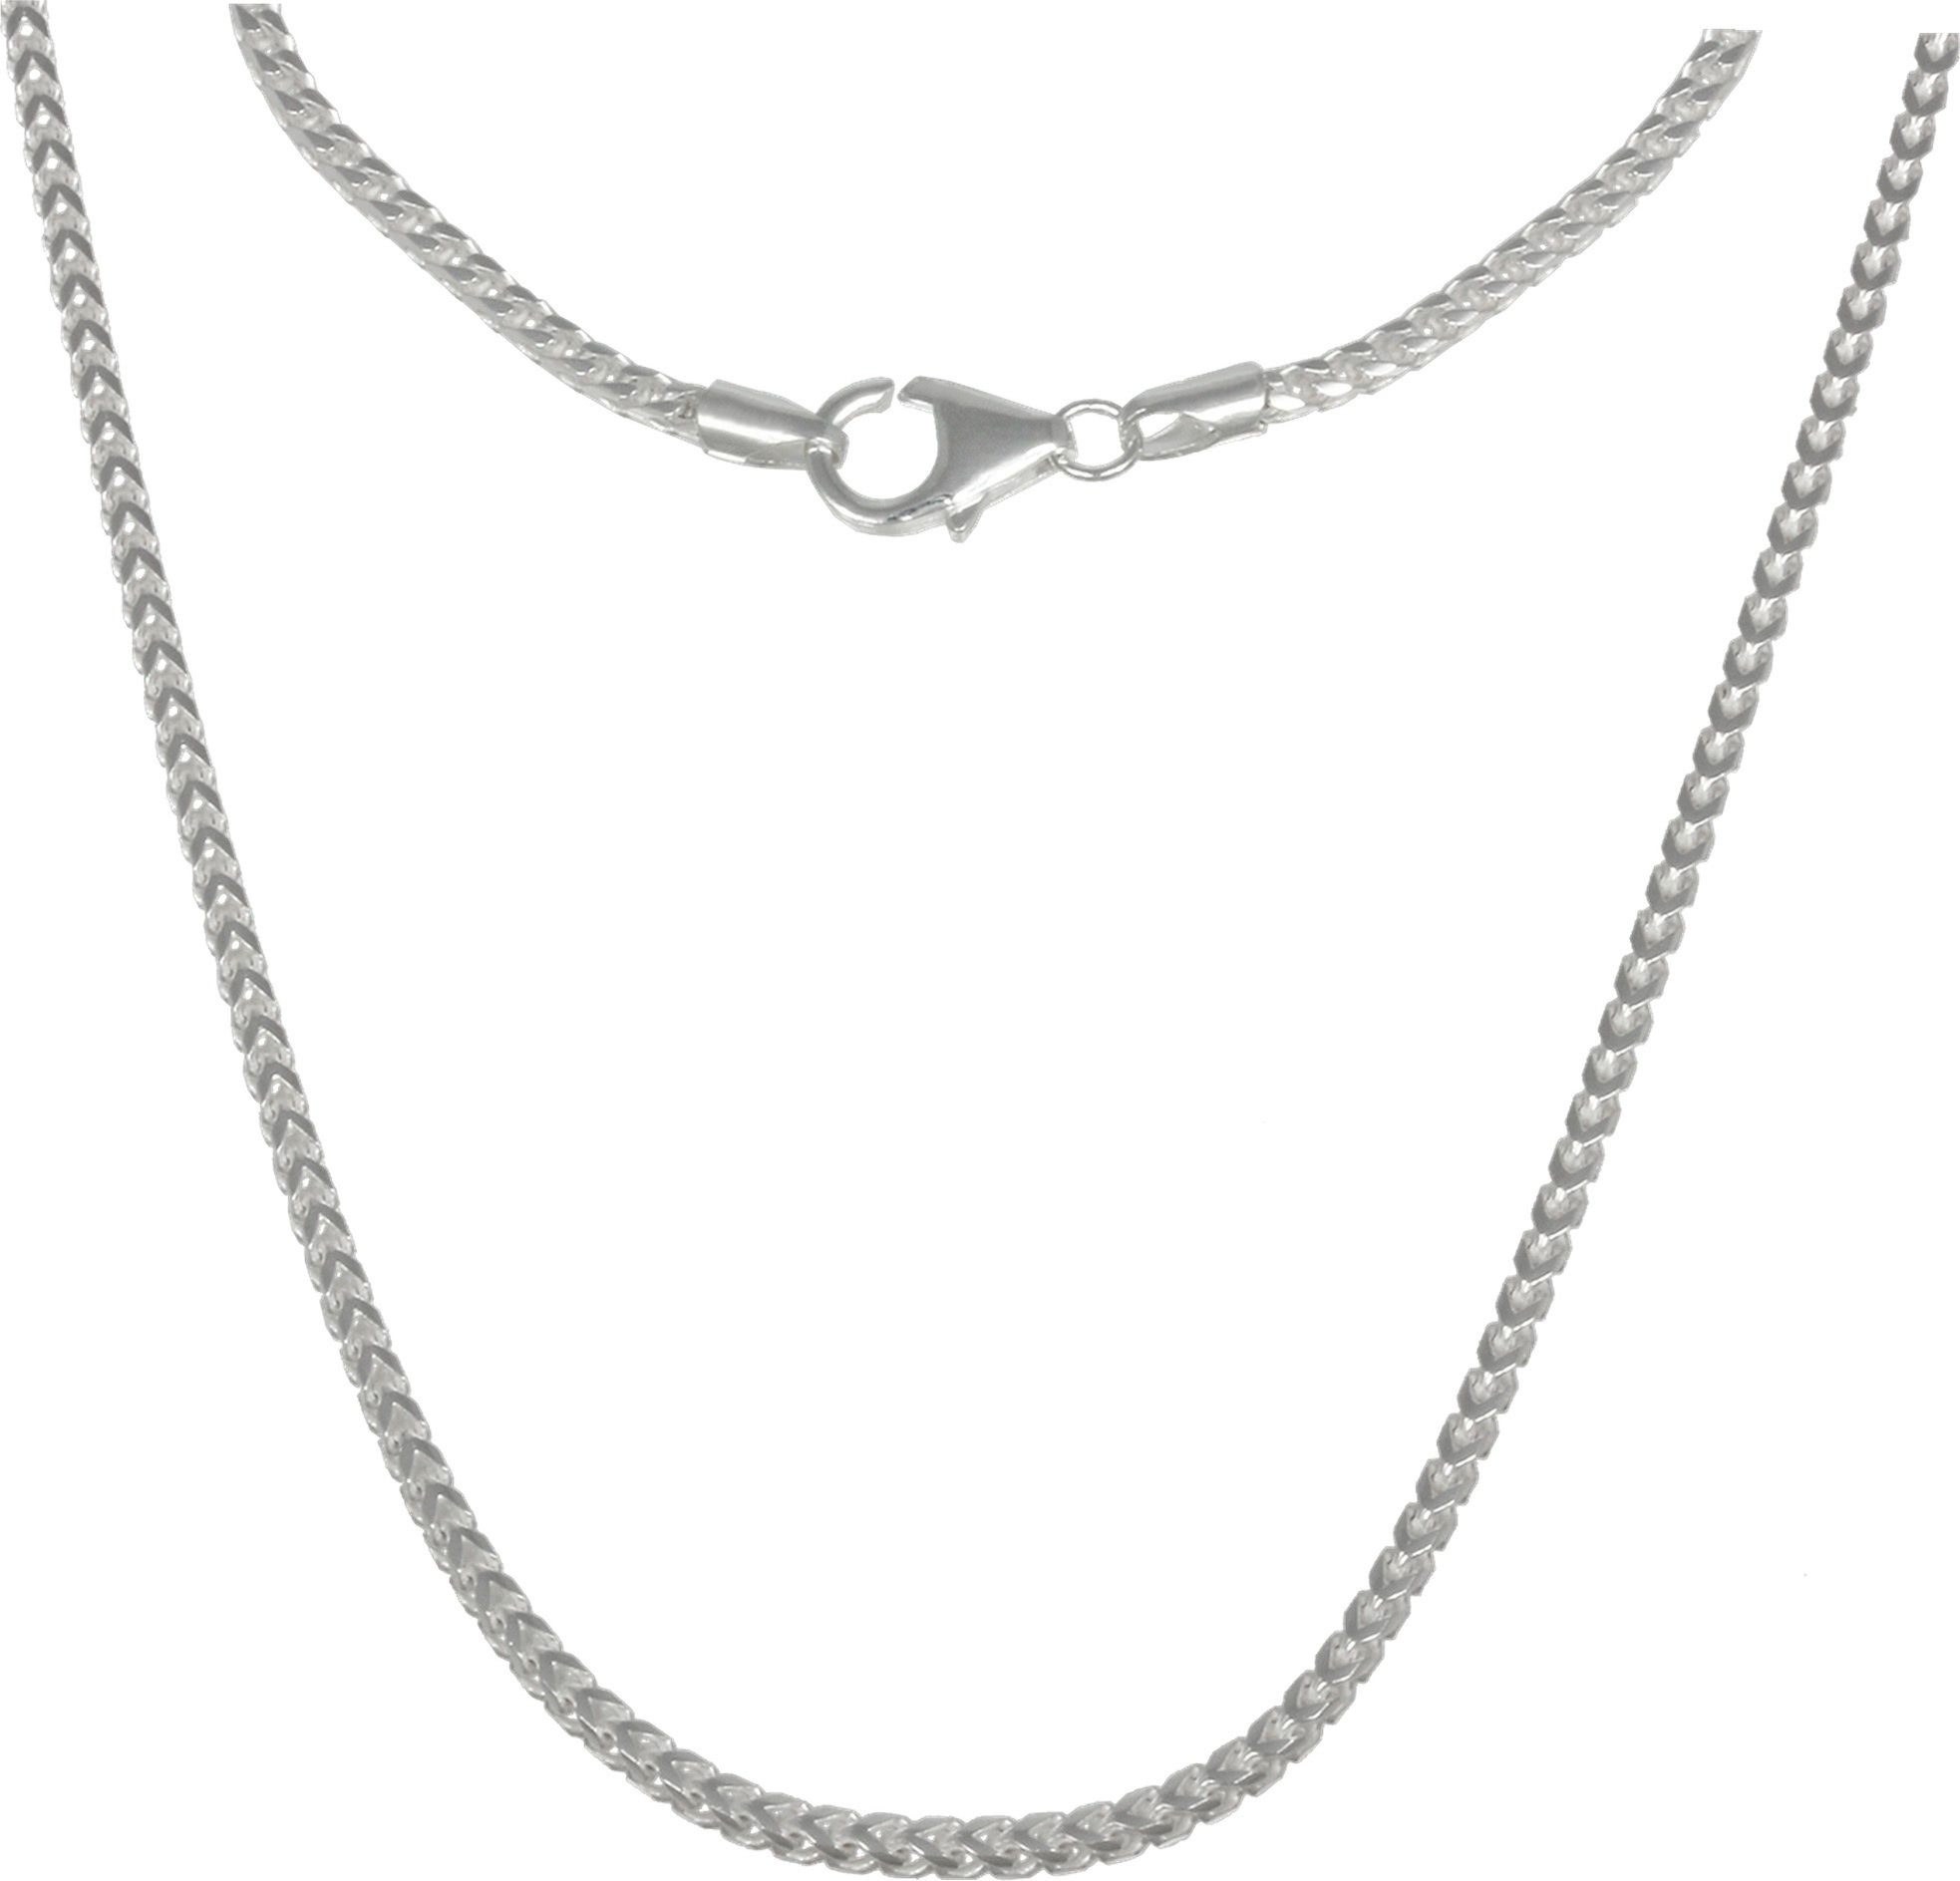 SilberDream Silberkette SilberDream Halsketten Echt, Made-In silber 70cm, Silber, 925 Damen ca. Sterling Germa silber, Halskette Farbe